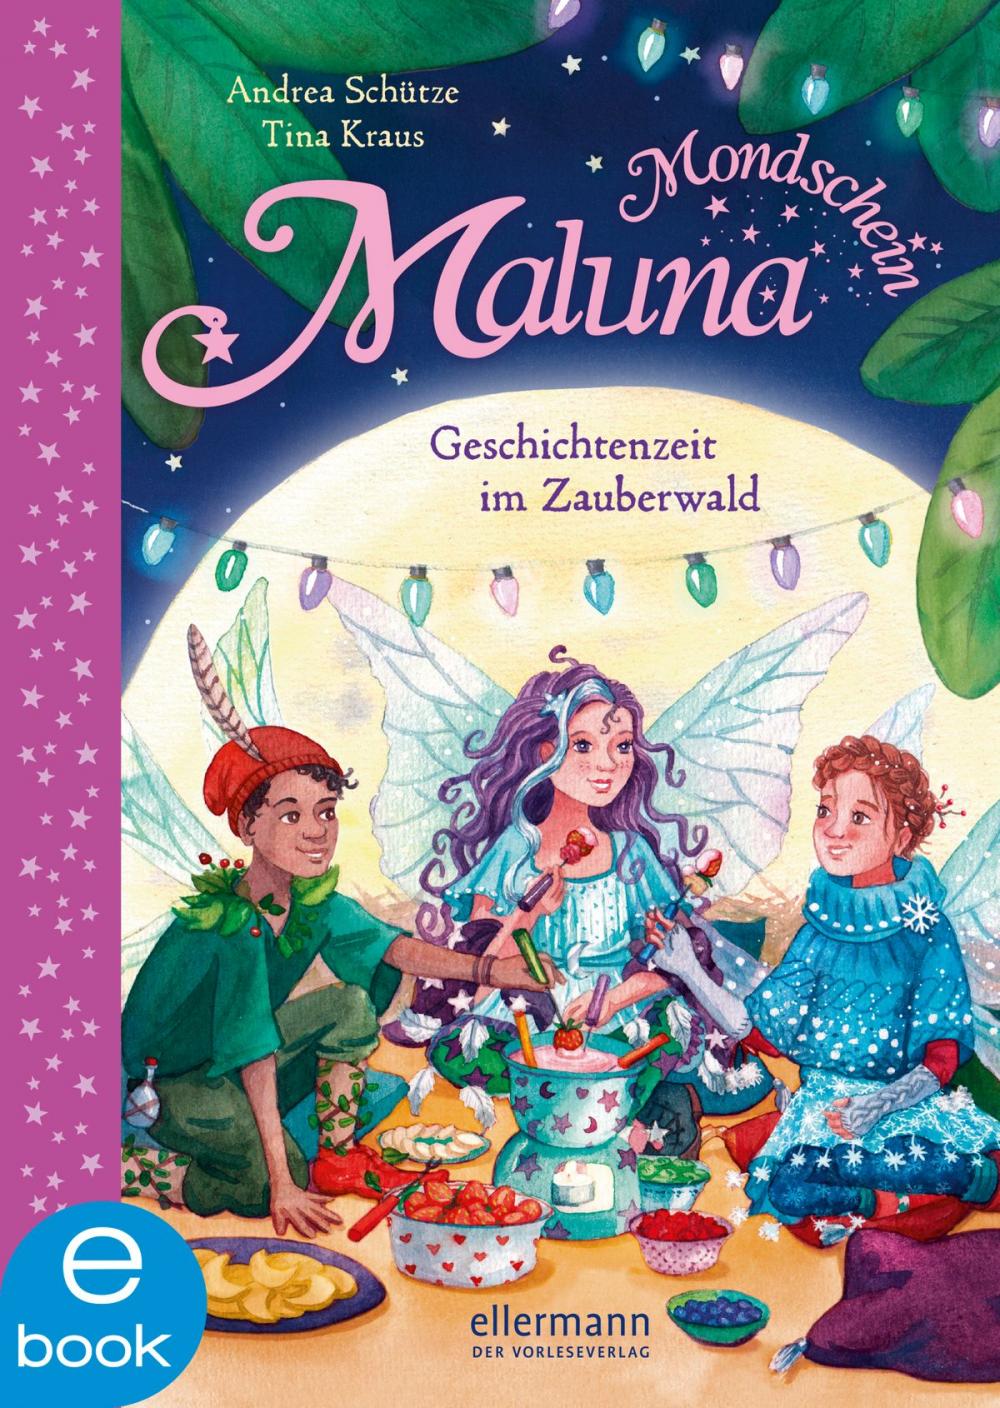 Big bigCover of Maluna Mondschein - Geschichtenzeit im Zauberwald